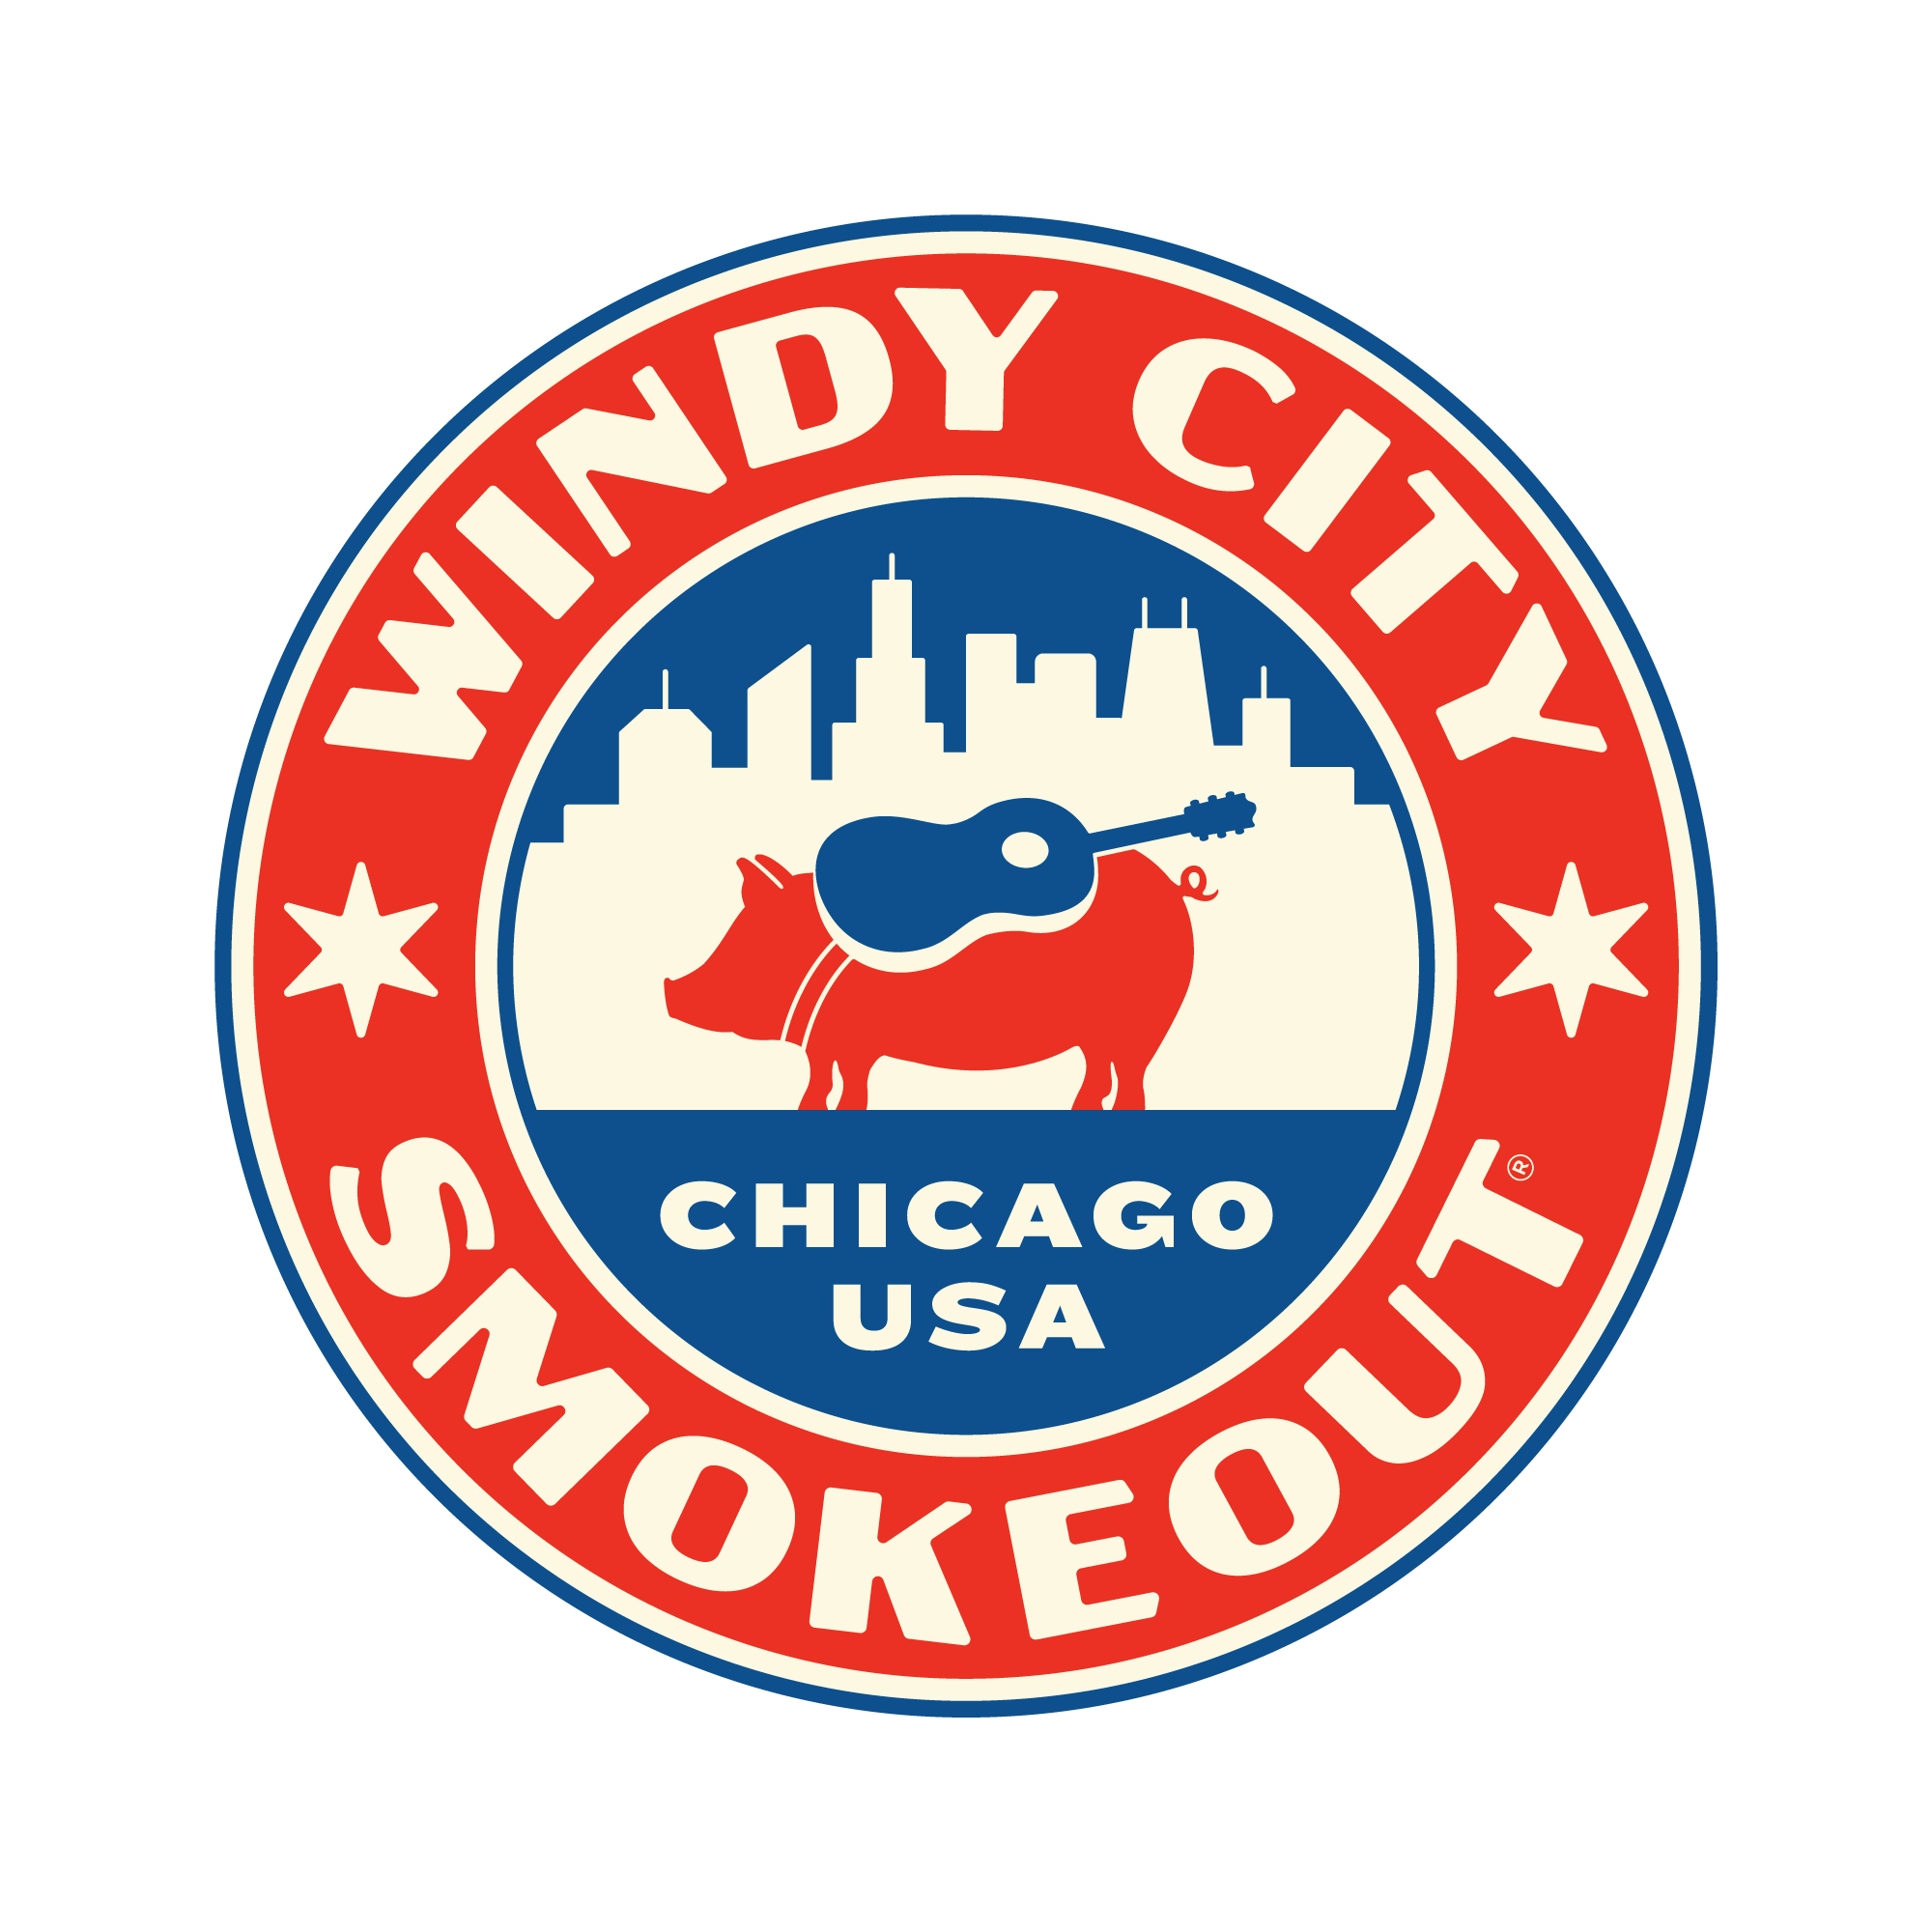 windy city smokeout logo